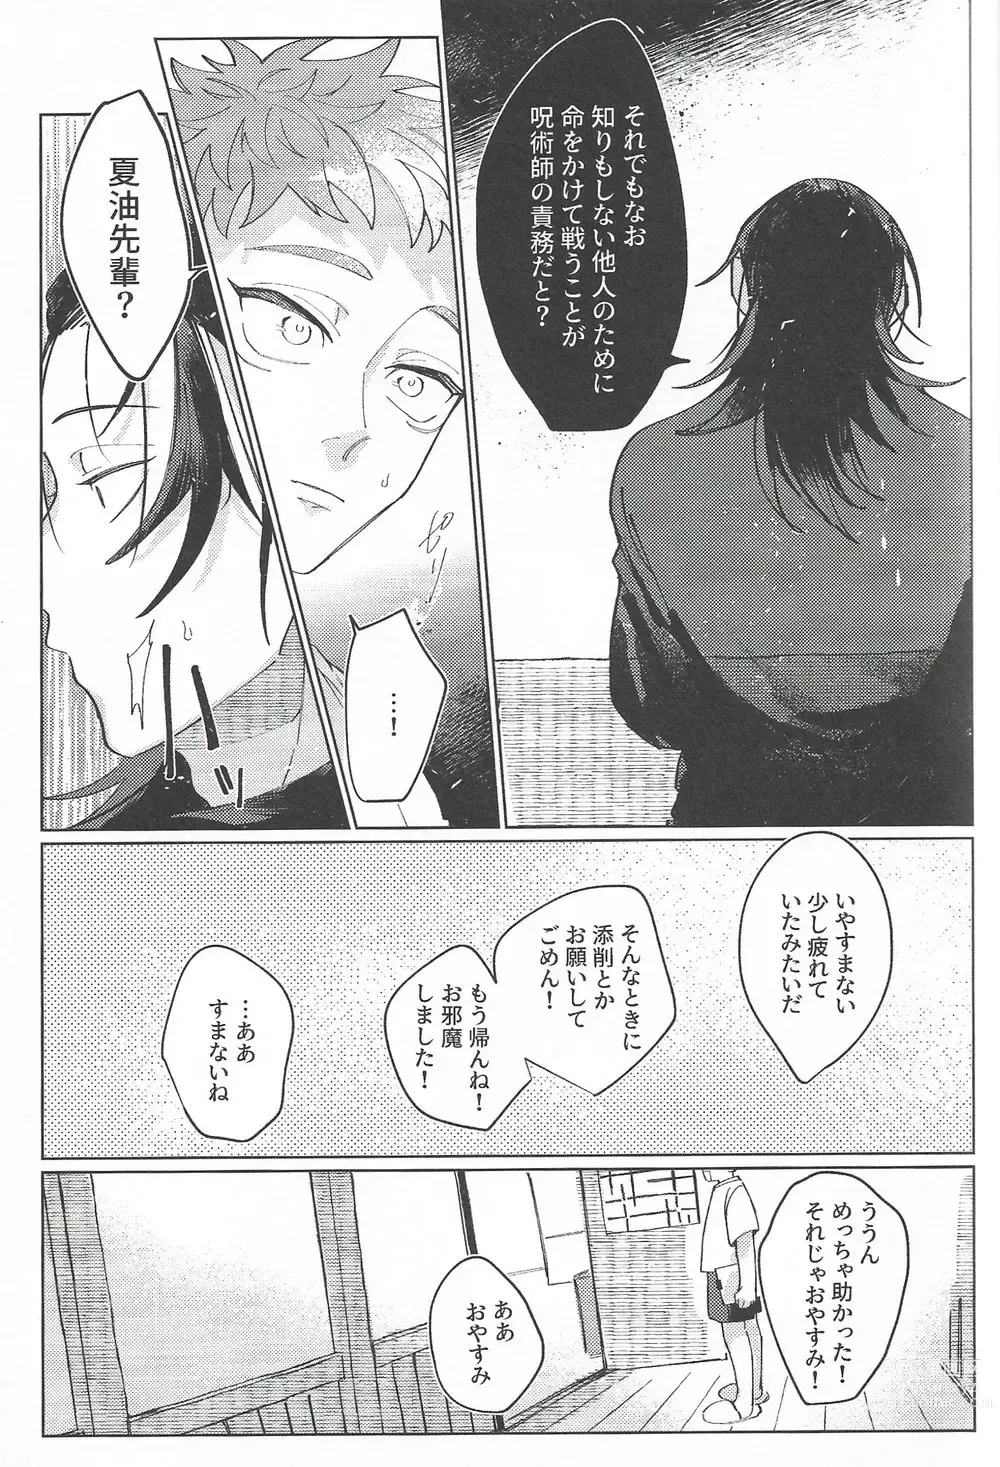 Page 50 of doujinshi Rakuen no Niwa